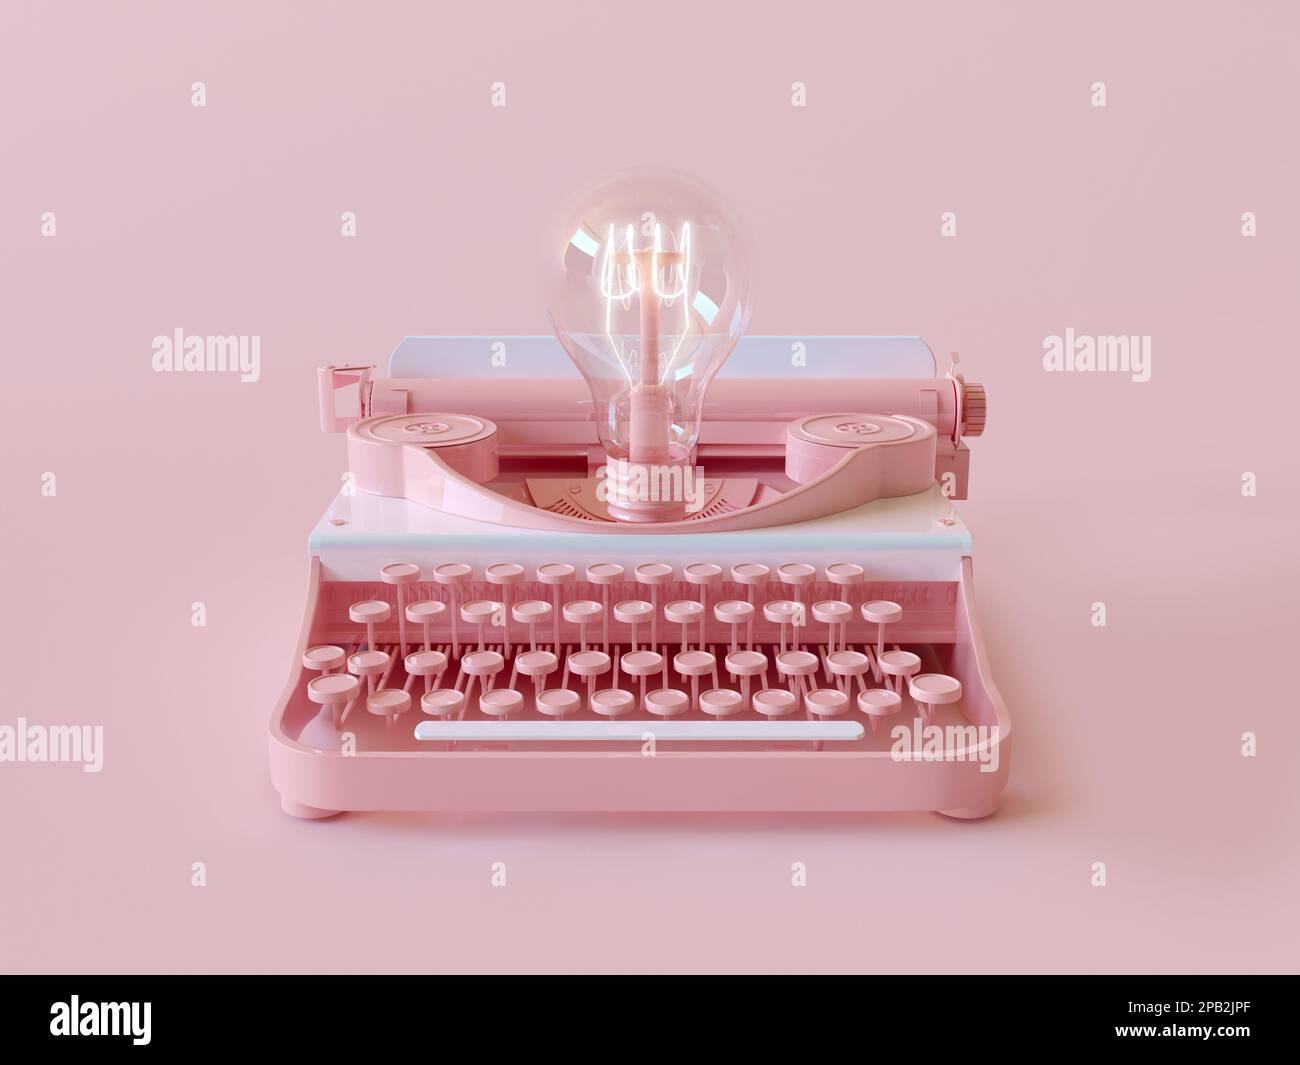 Retro-Schreibmaschine mit Glühlampenbeleuchtung. Copy Space minimales Konzept von Idee, Innovation, Genie, Autor, Plot, Journalismus, Inspiration. 3D-Rendern Stockfoto